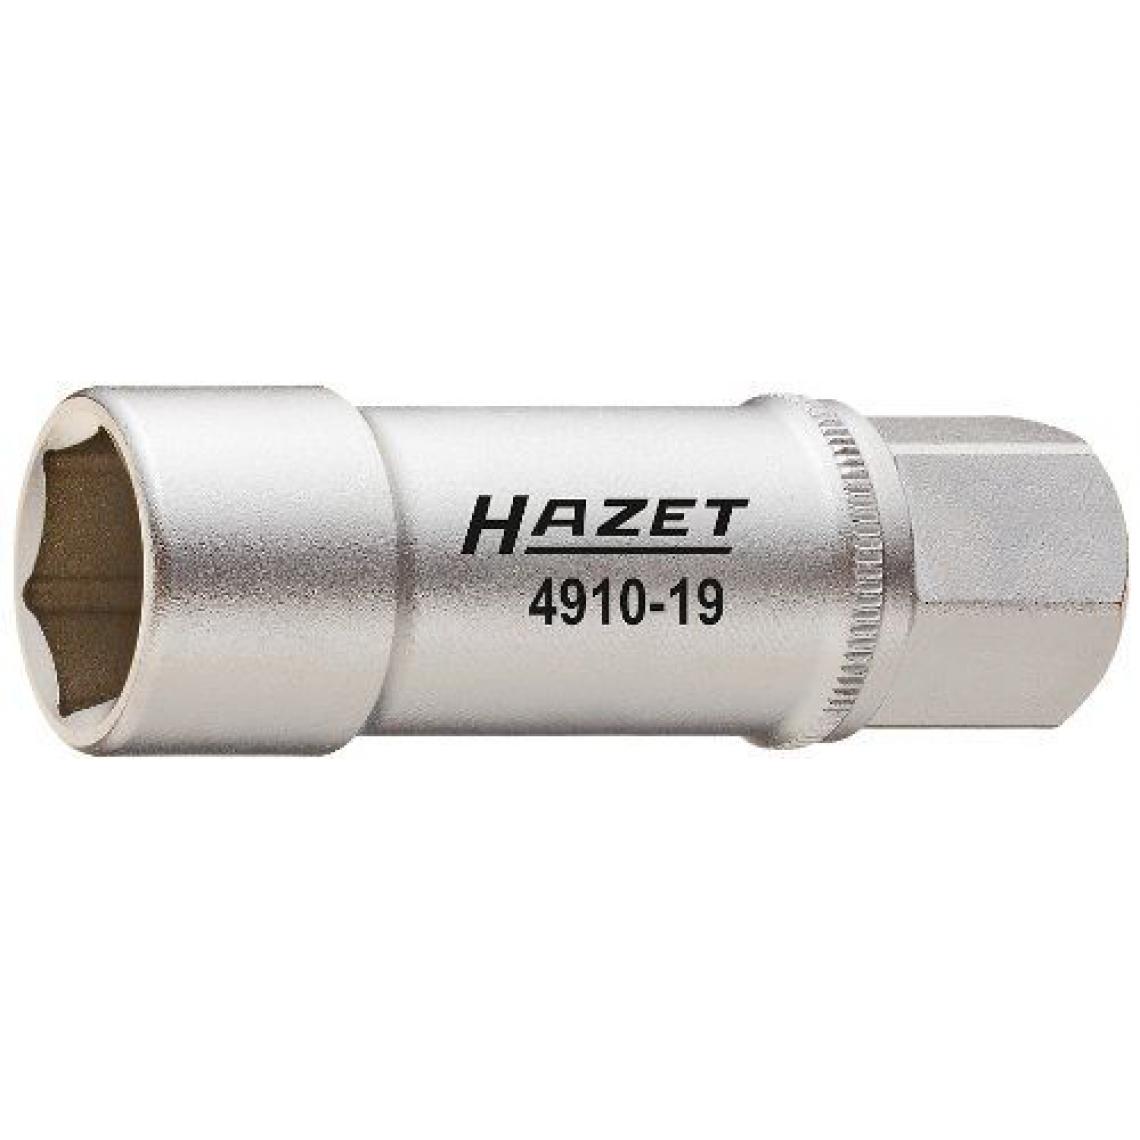 Hazet - Hazet 880VDE-9Clé à douille à tête hexagonale Fixation 491017 - Douilles électriques